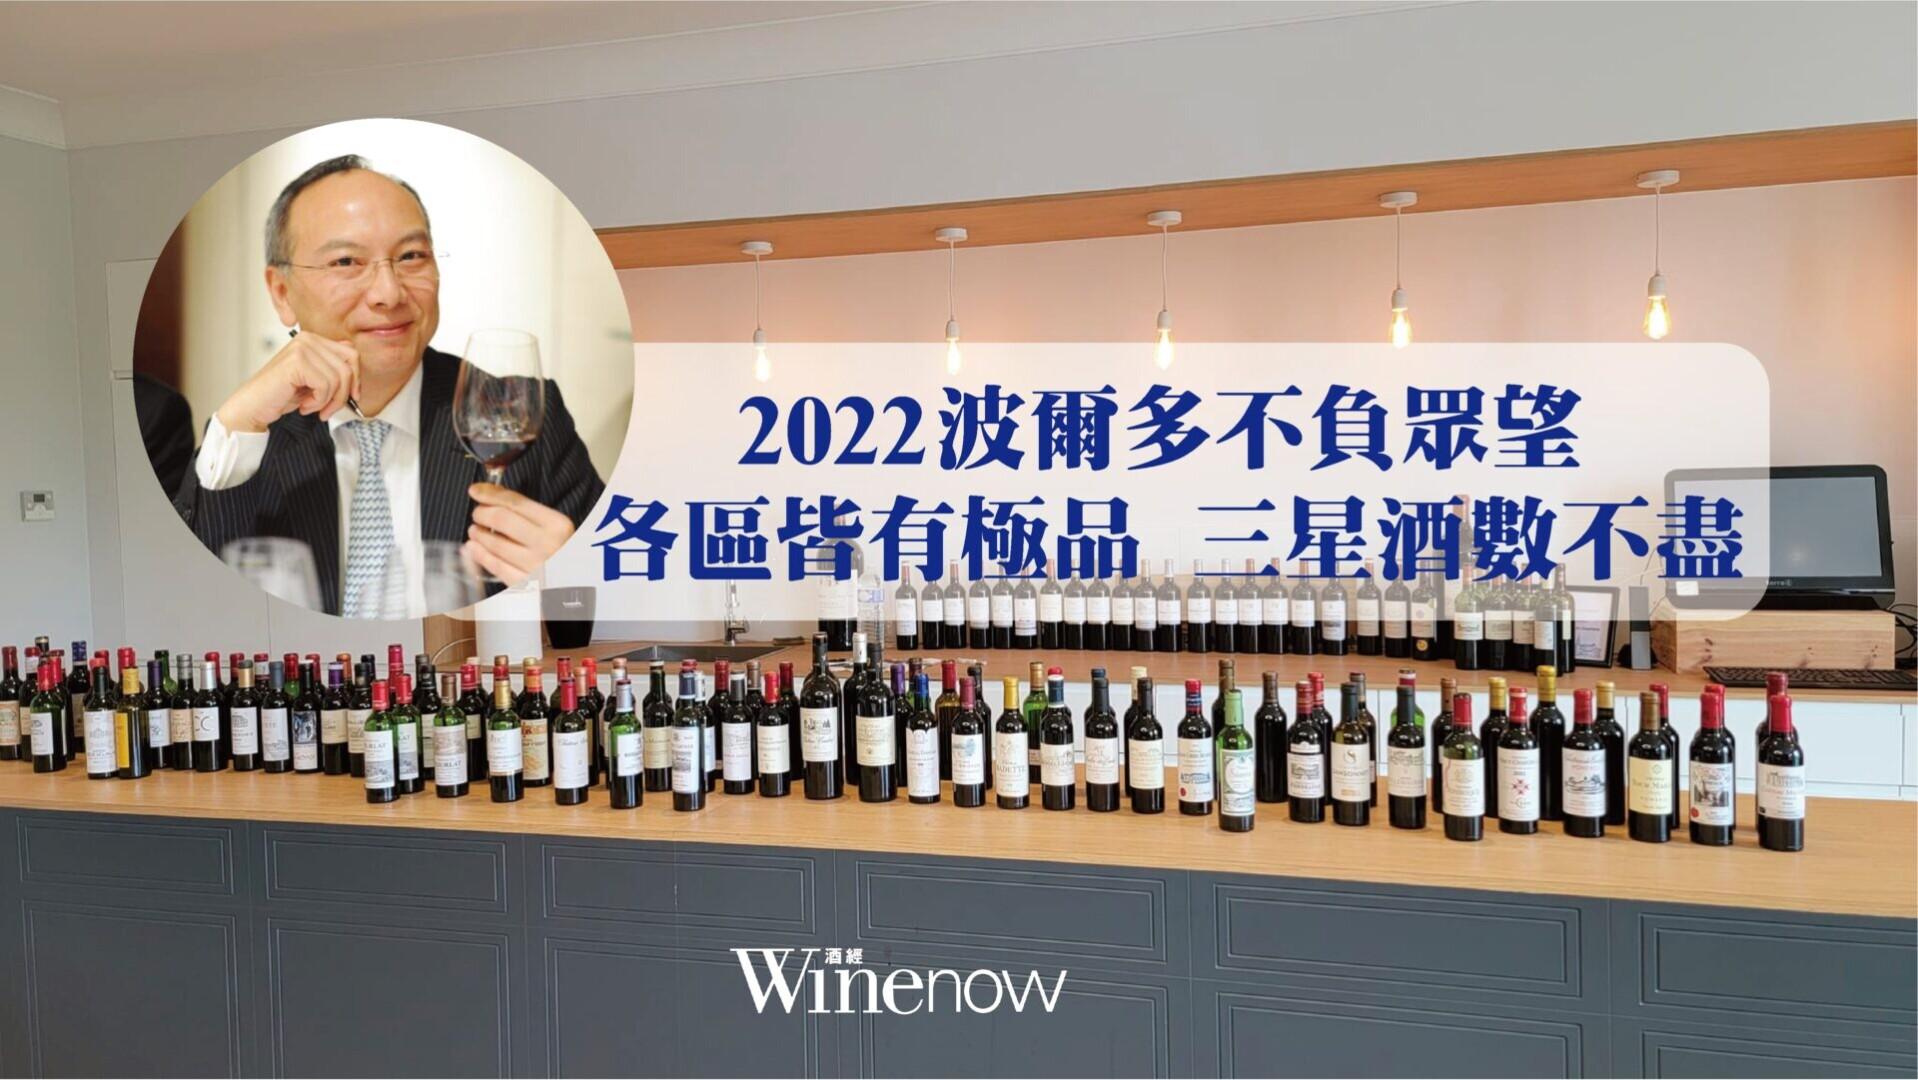 2022 波爾多不負眾望 各區皆有極品 三星酒數不盡 - WineNow HK 專欄文章